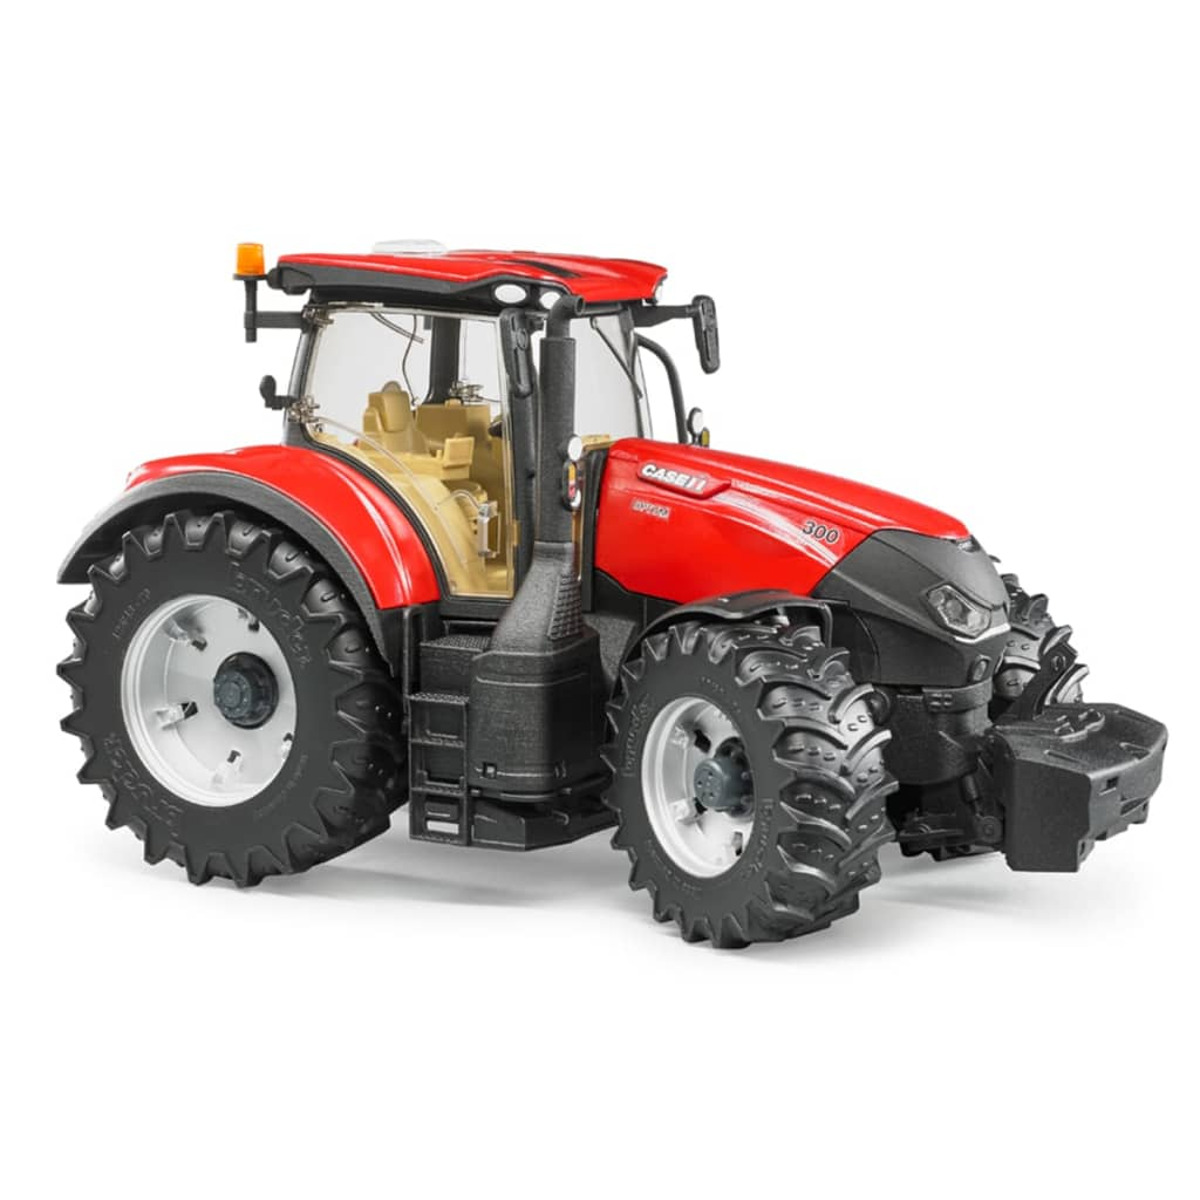 BRUDER 411085 Modellfahrzeug Traktor